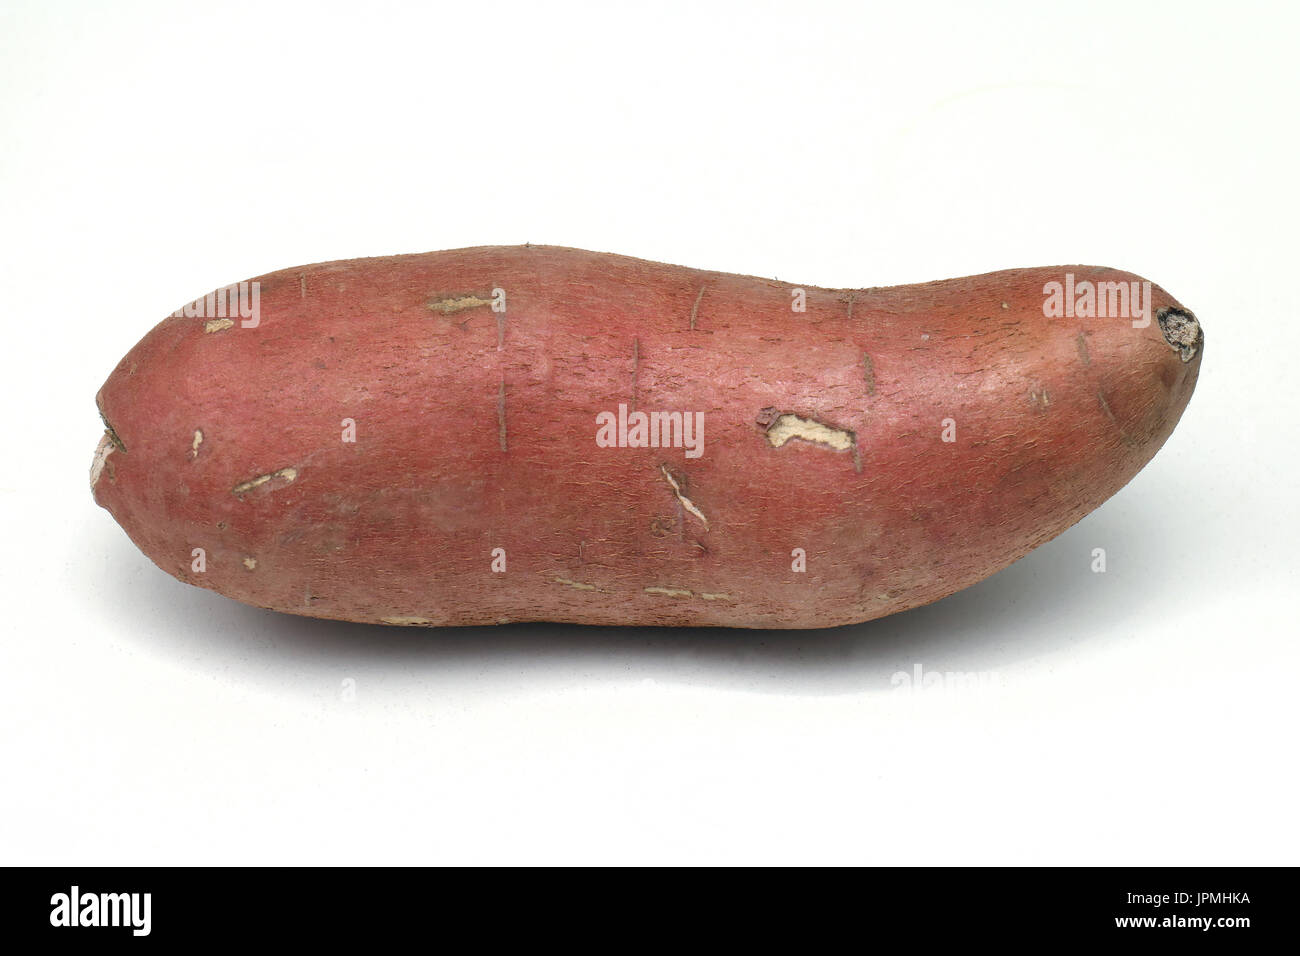 Red skin raw sweet potato on white background Stock Photo